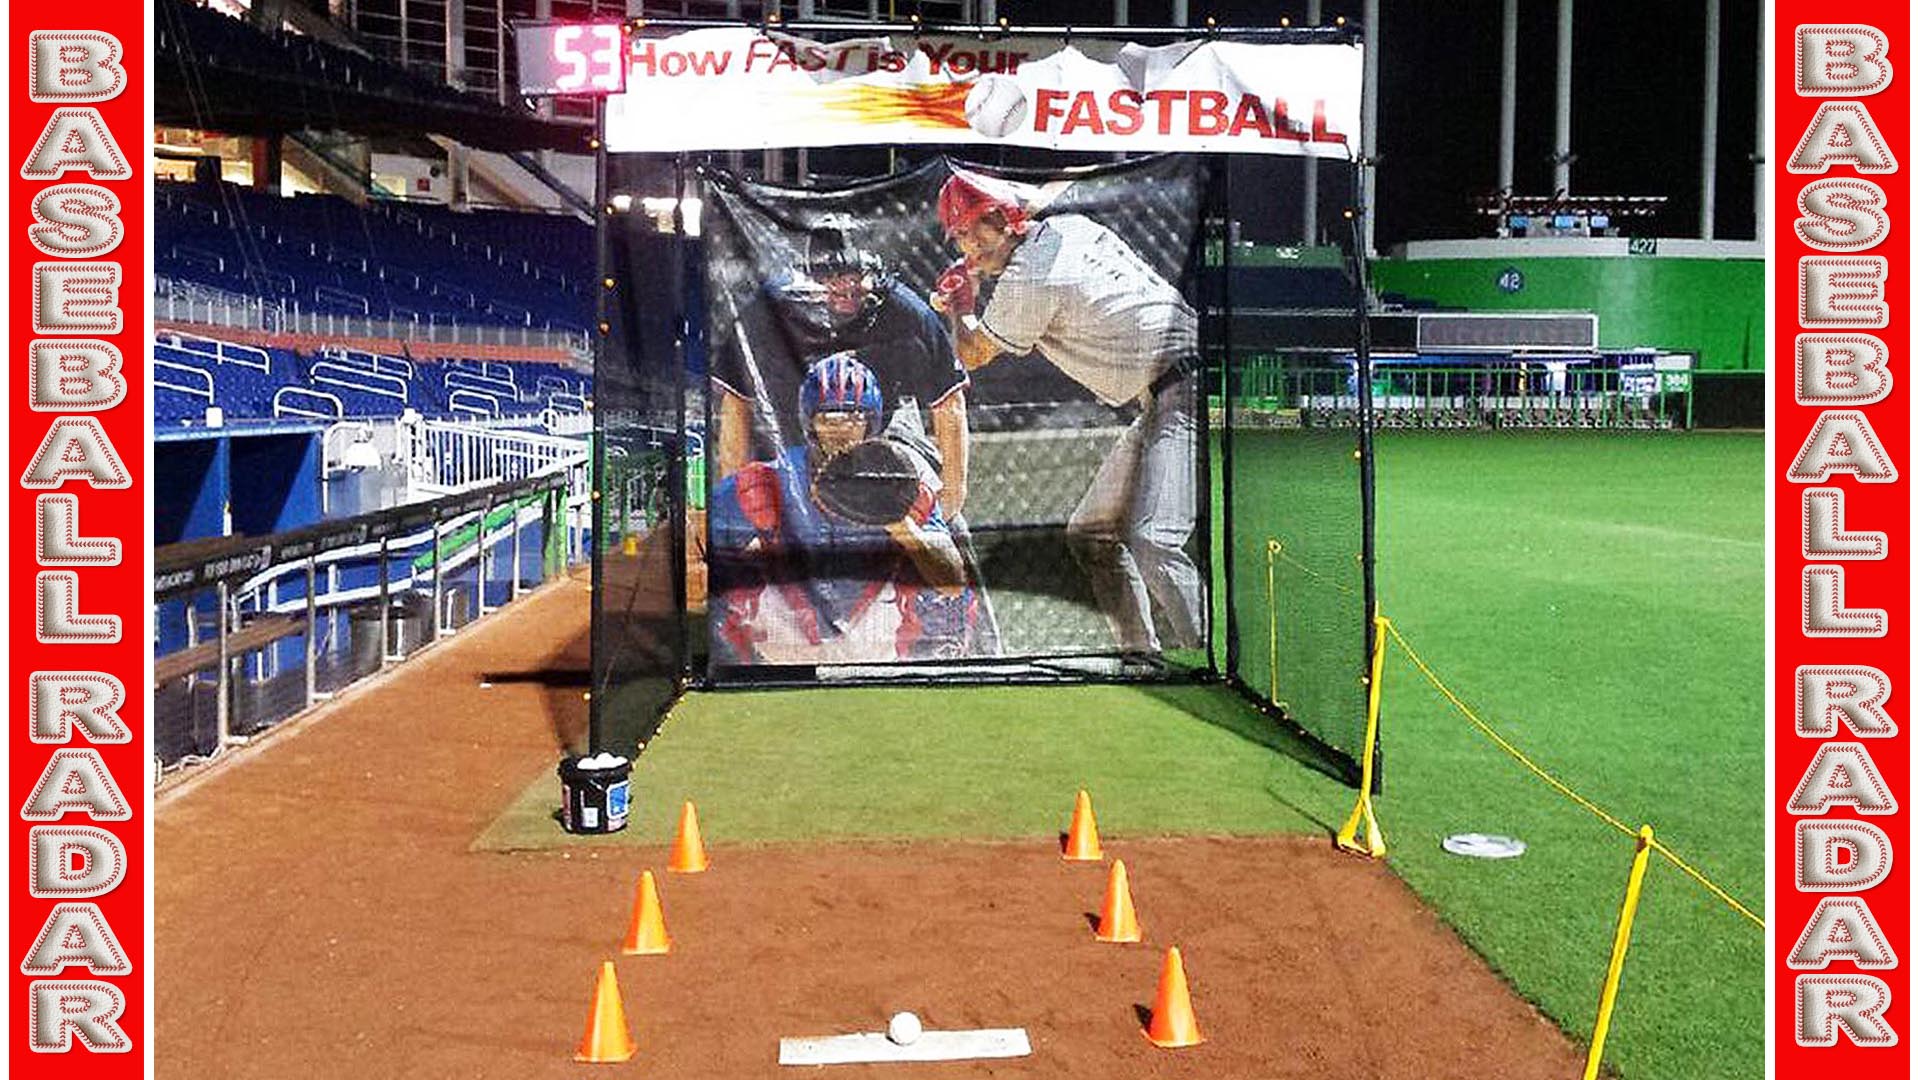 baseball speed radar pitch game rental in florida